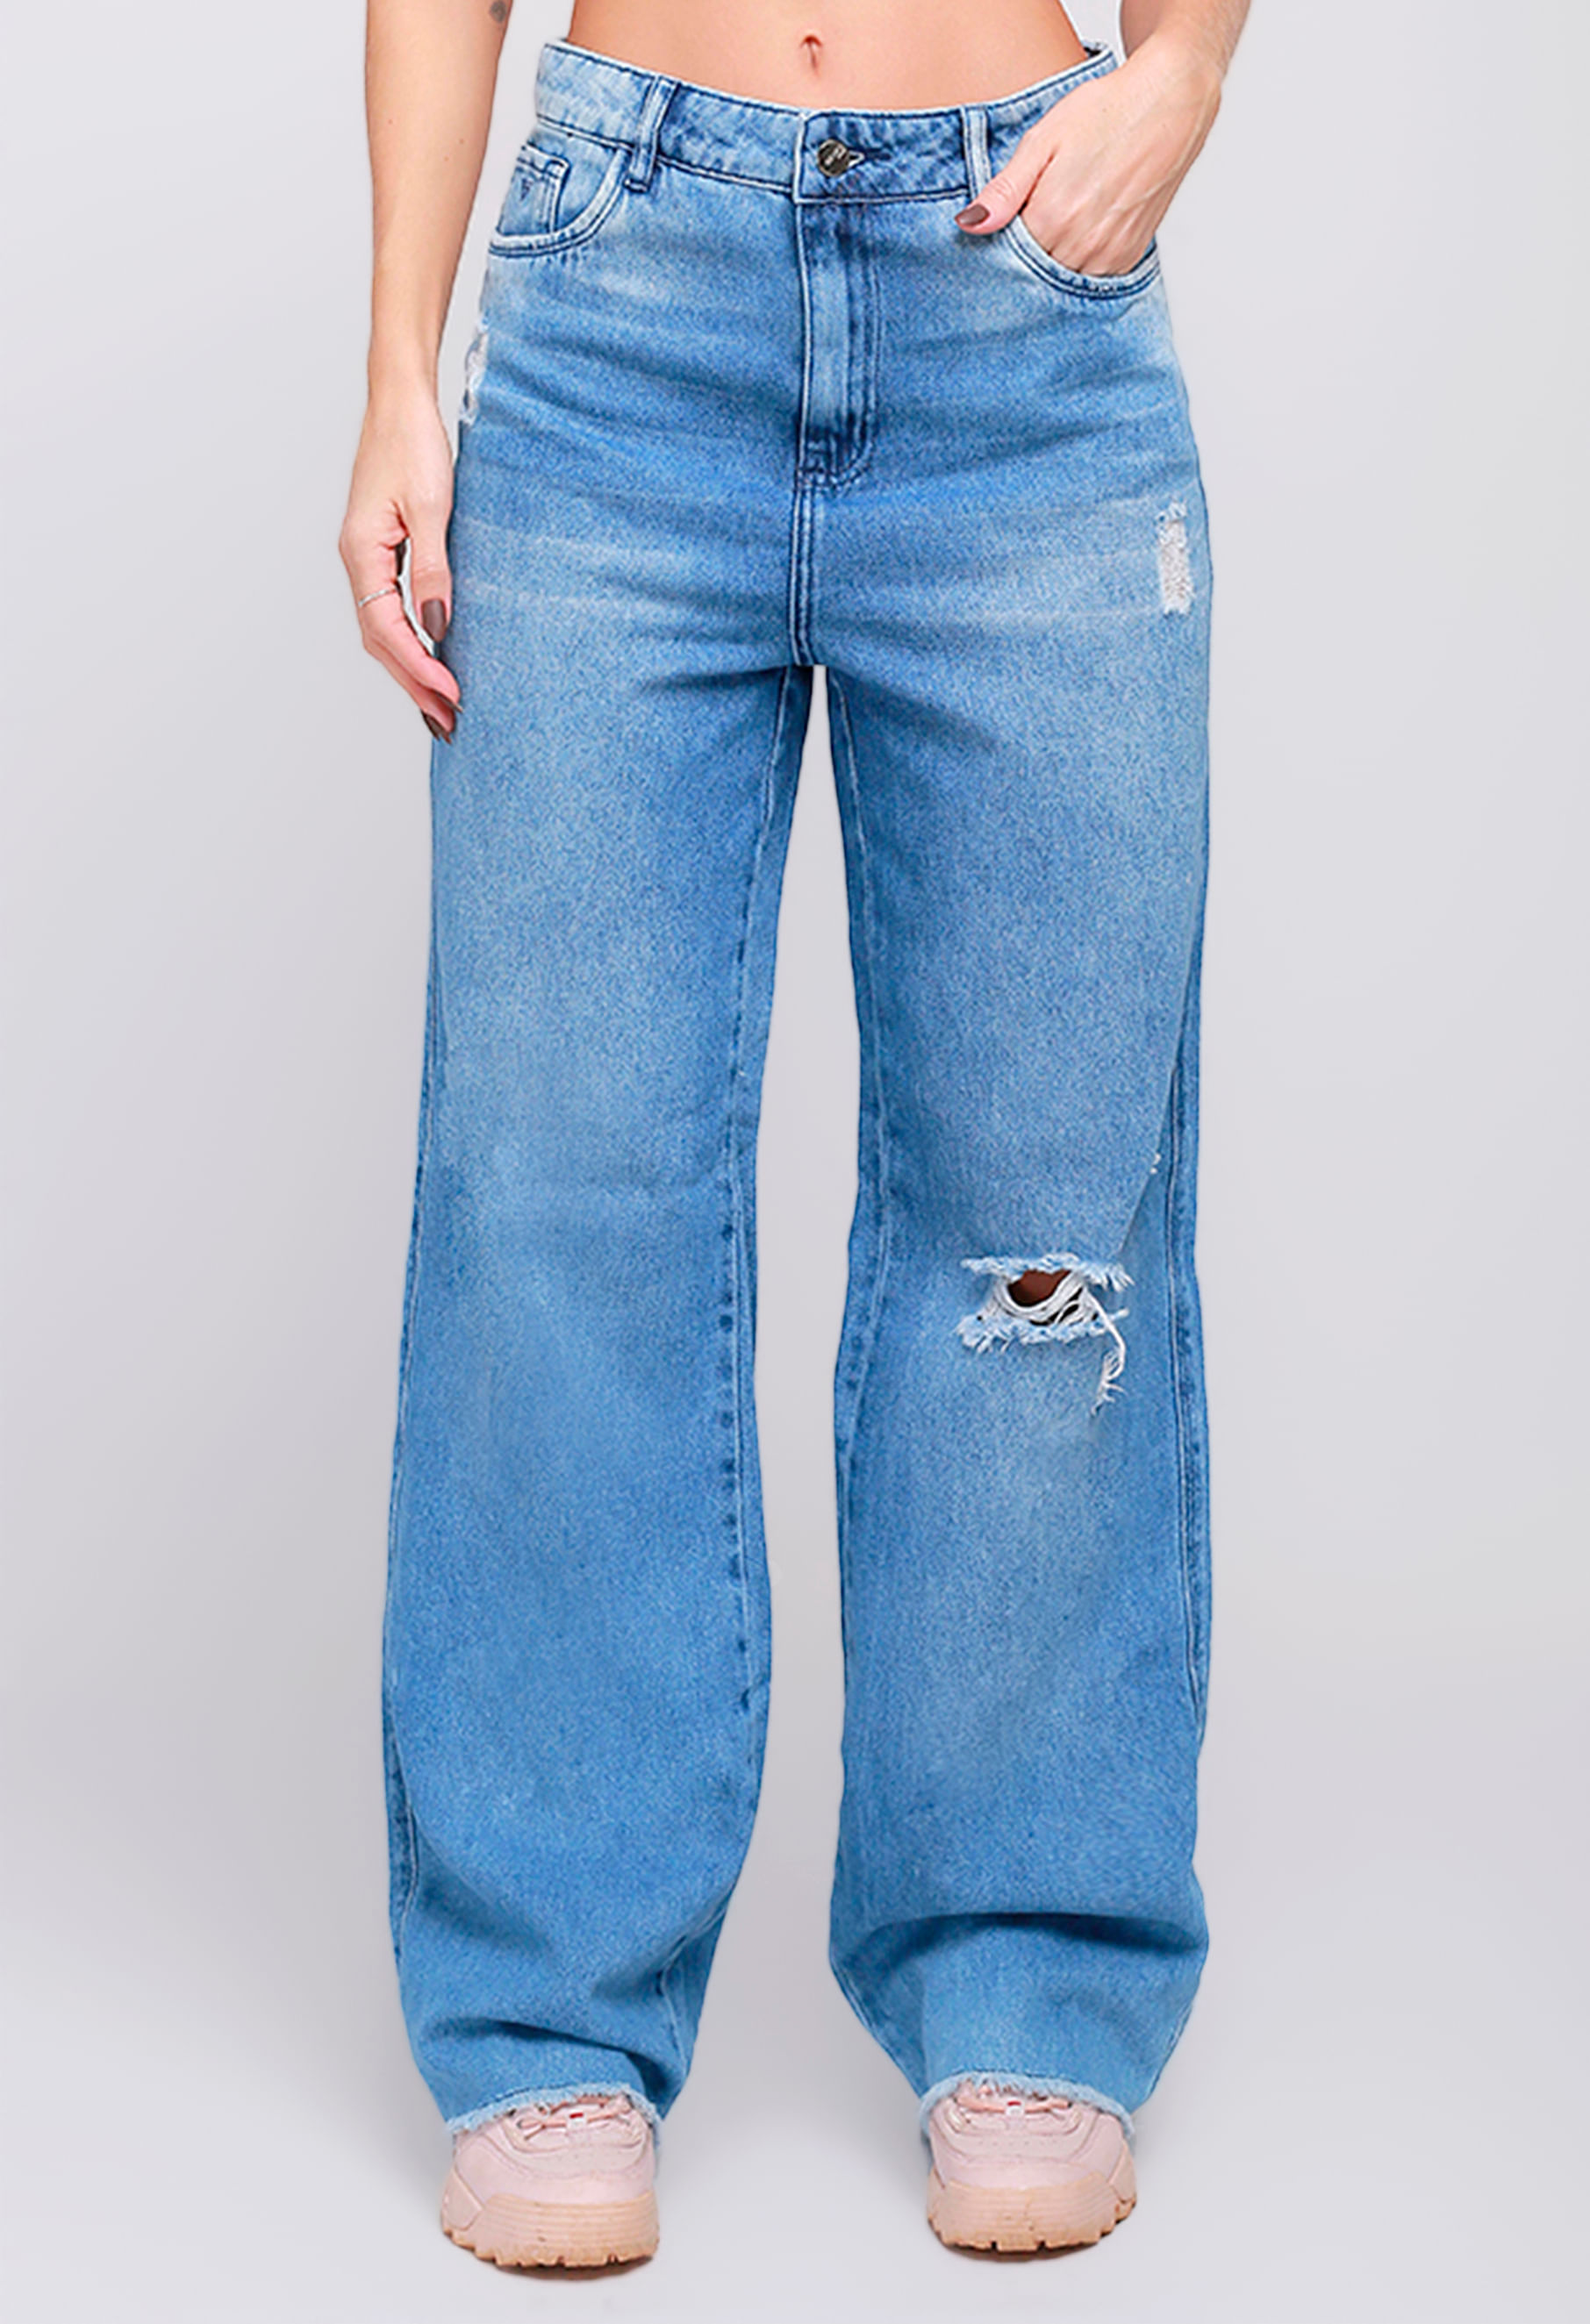 FEMININO - 767 Jeans